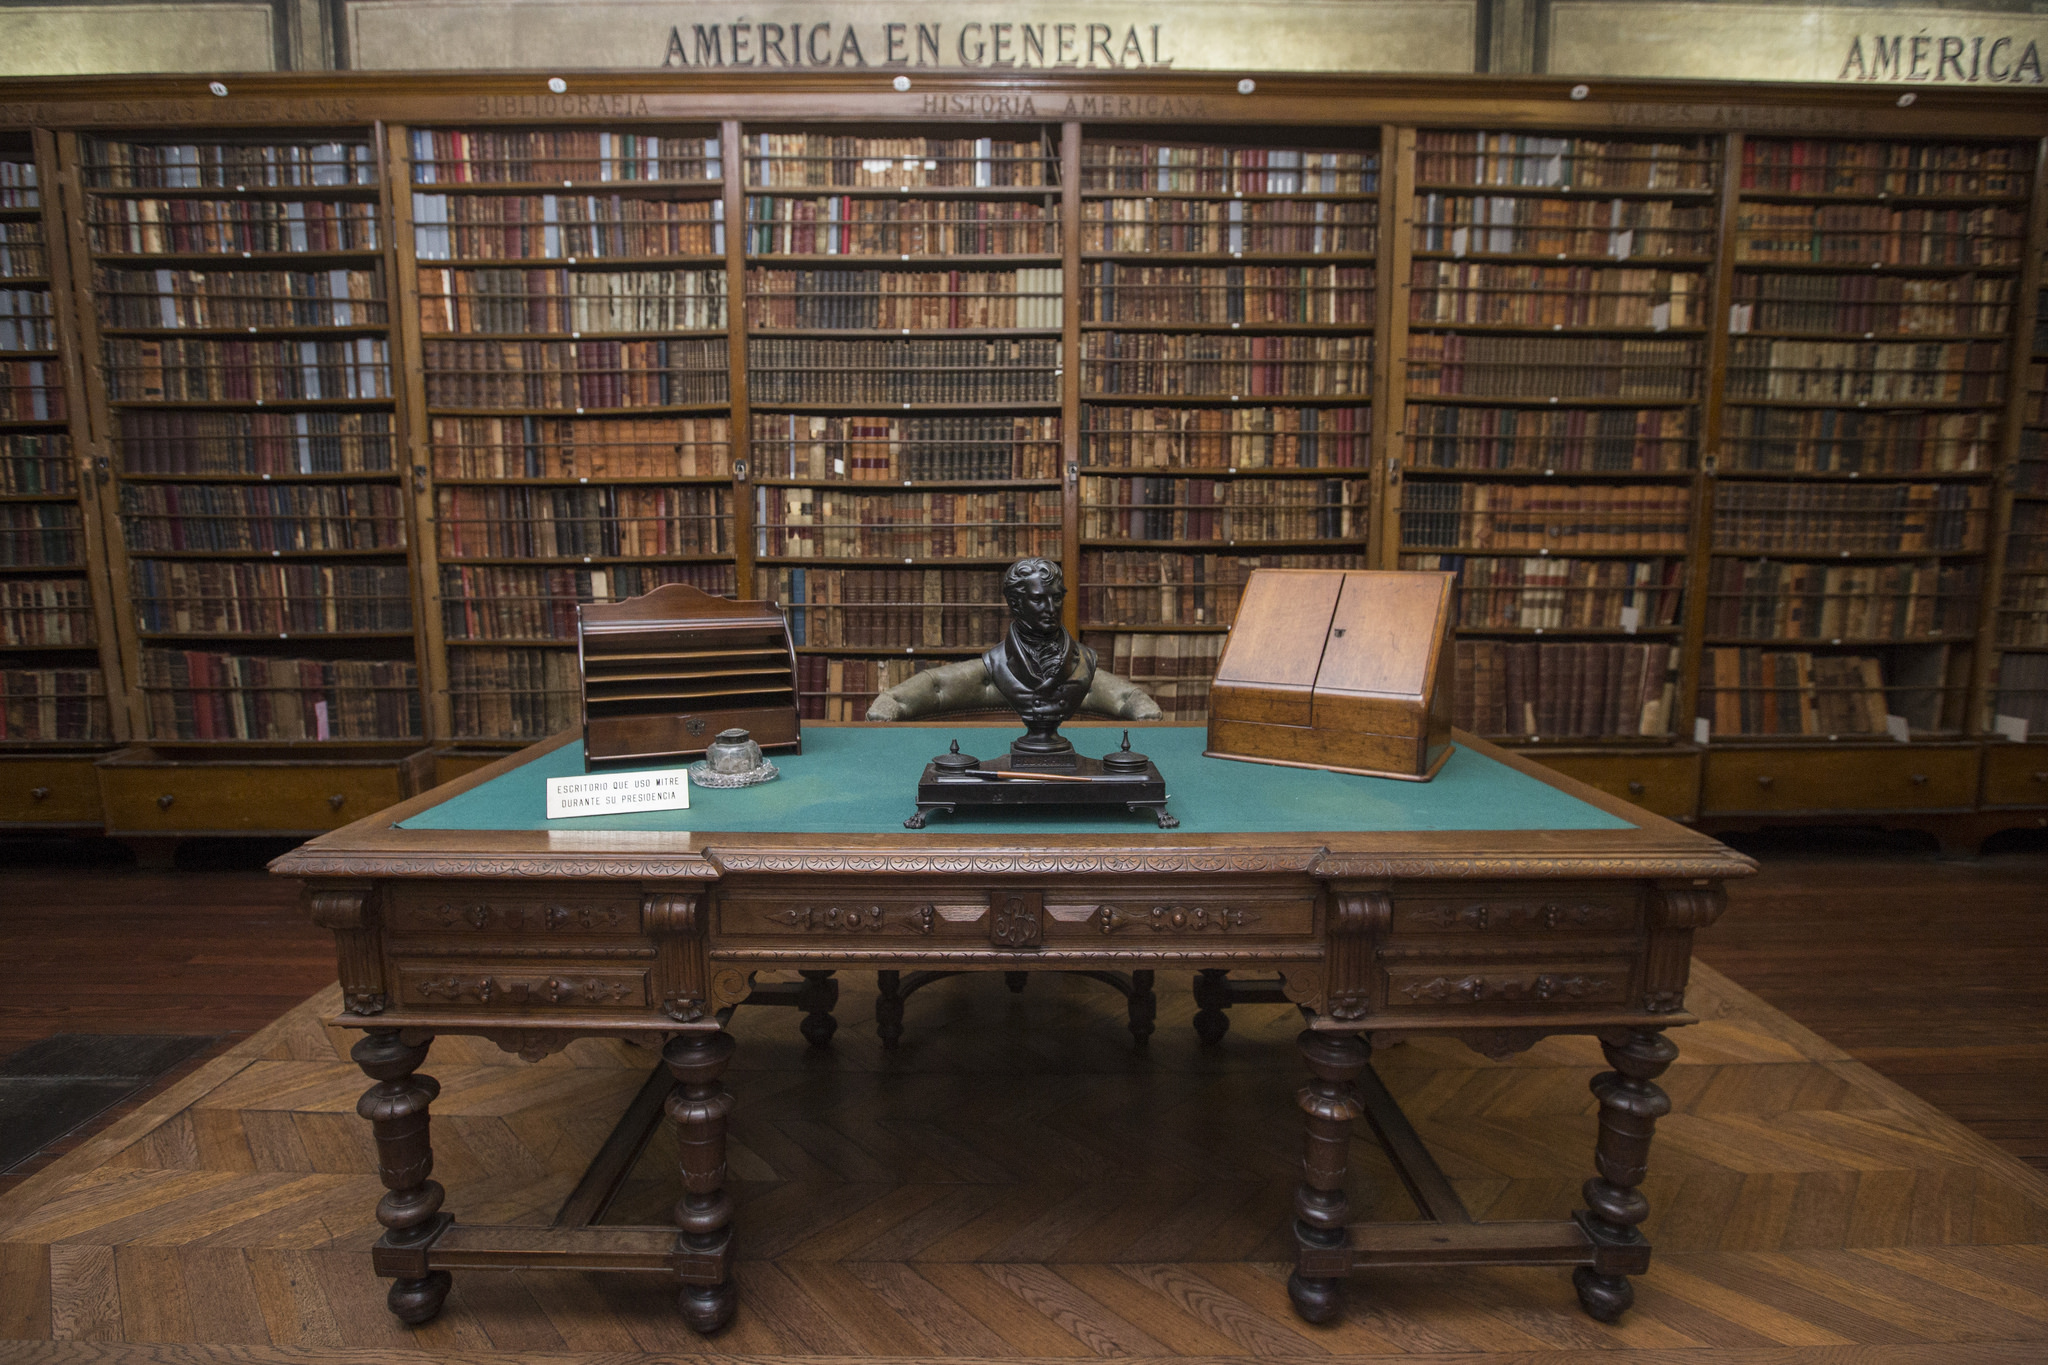 Biblioteca Americana. Organizada en 1883 por Bartolomé Mitre, es uno de los conjuntos más valiosos con que cuenta el museo. En el centro del salón se encuentra el escritorio que Mitre usó durante su presidencia y sobre el cual fueron velados sus restos.